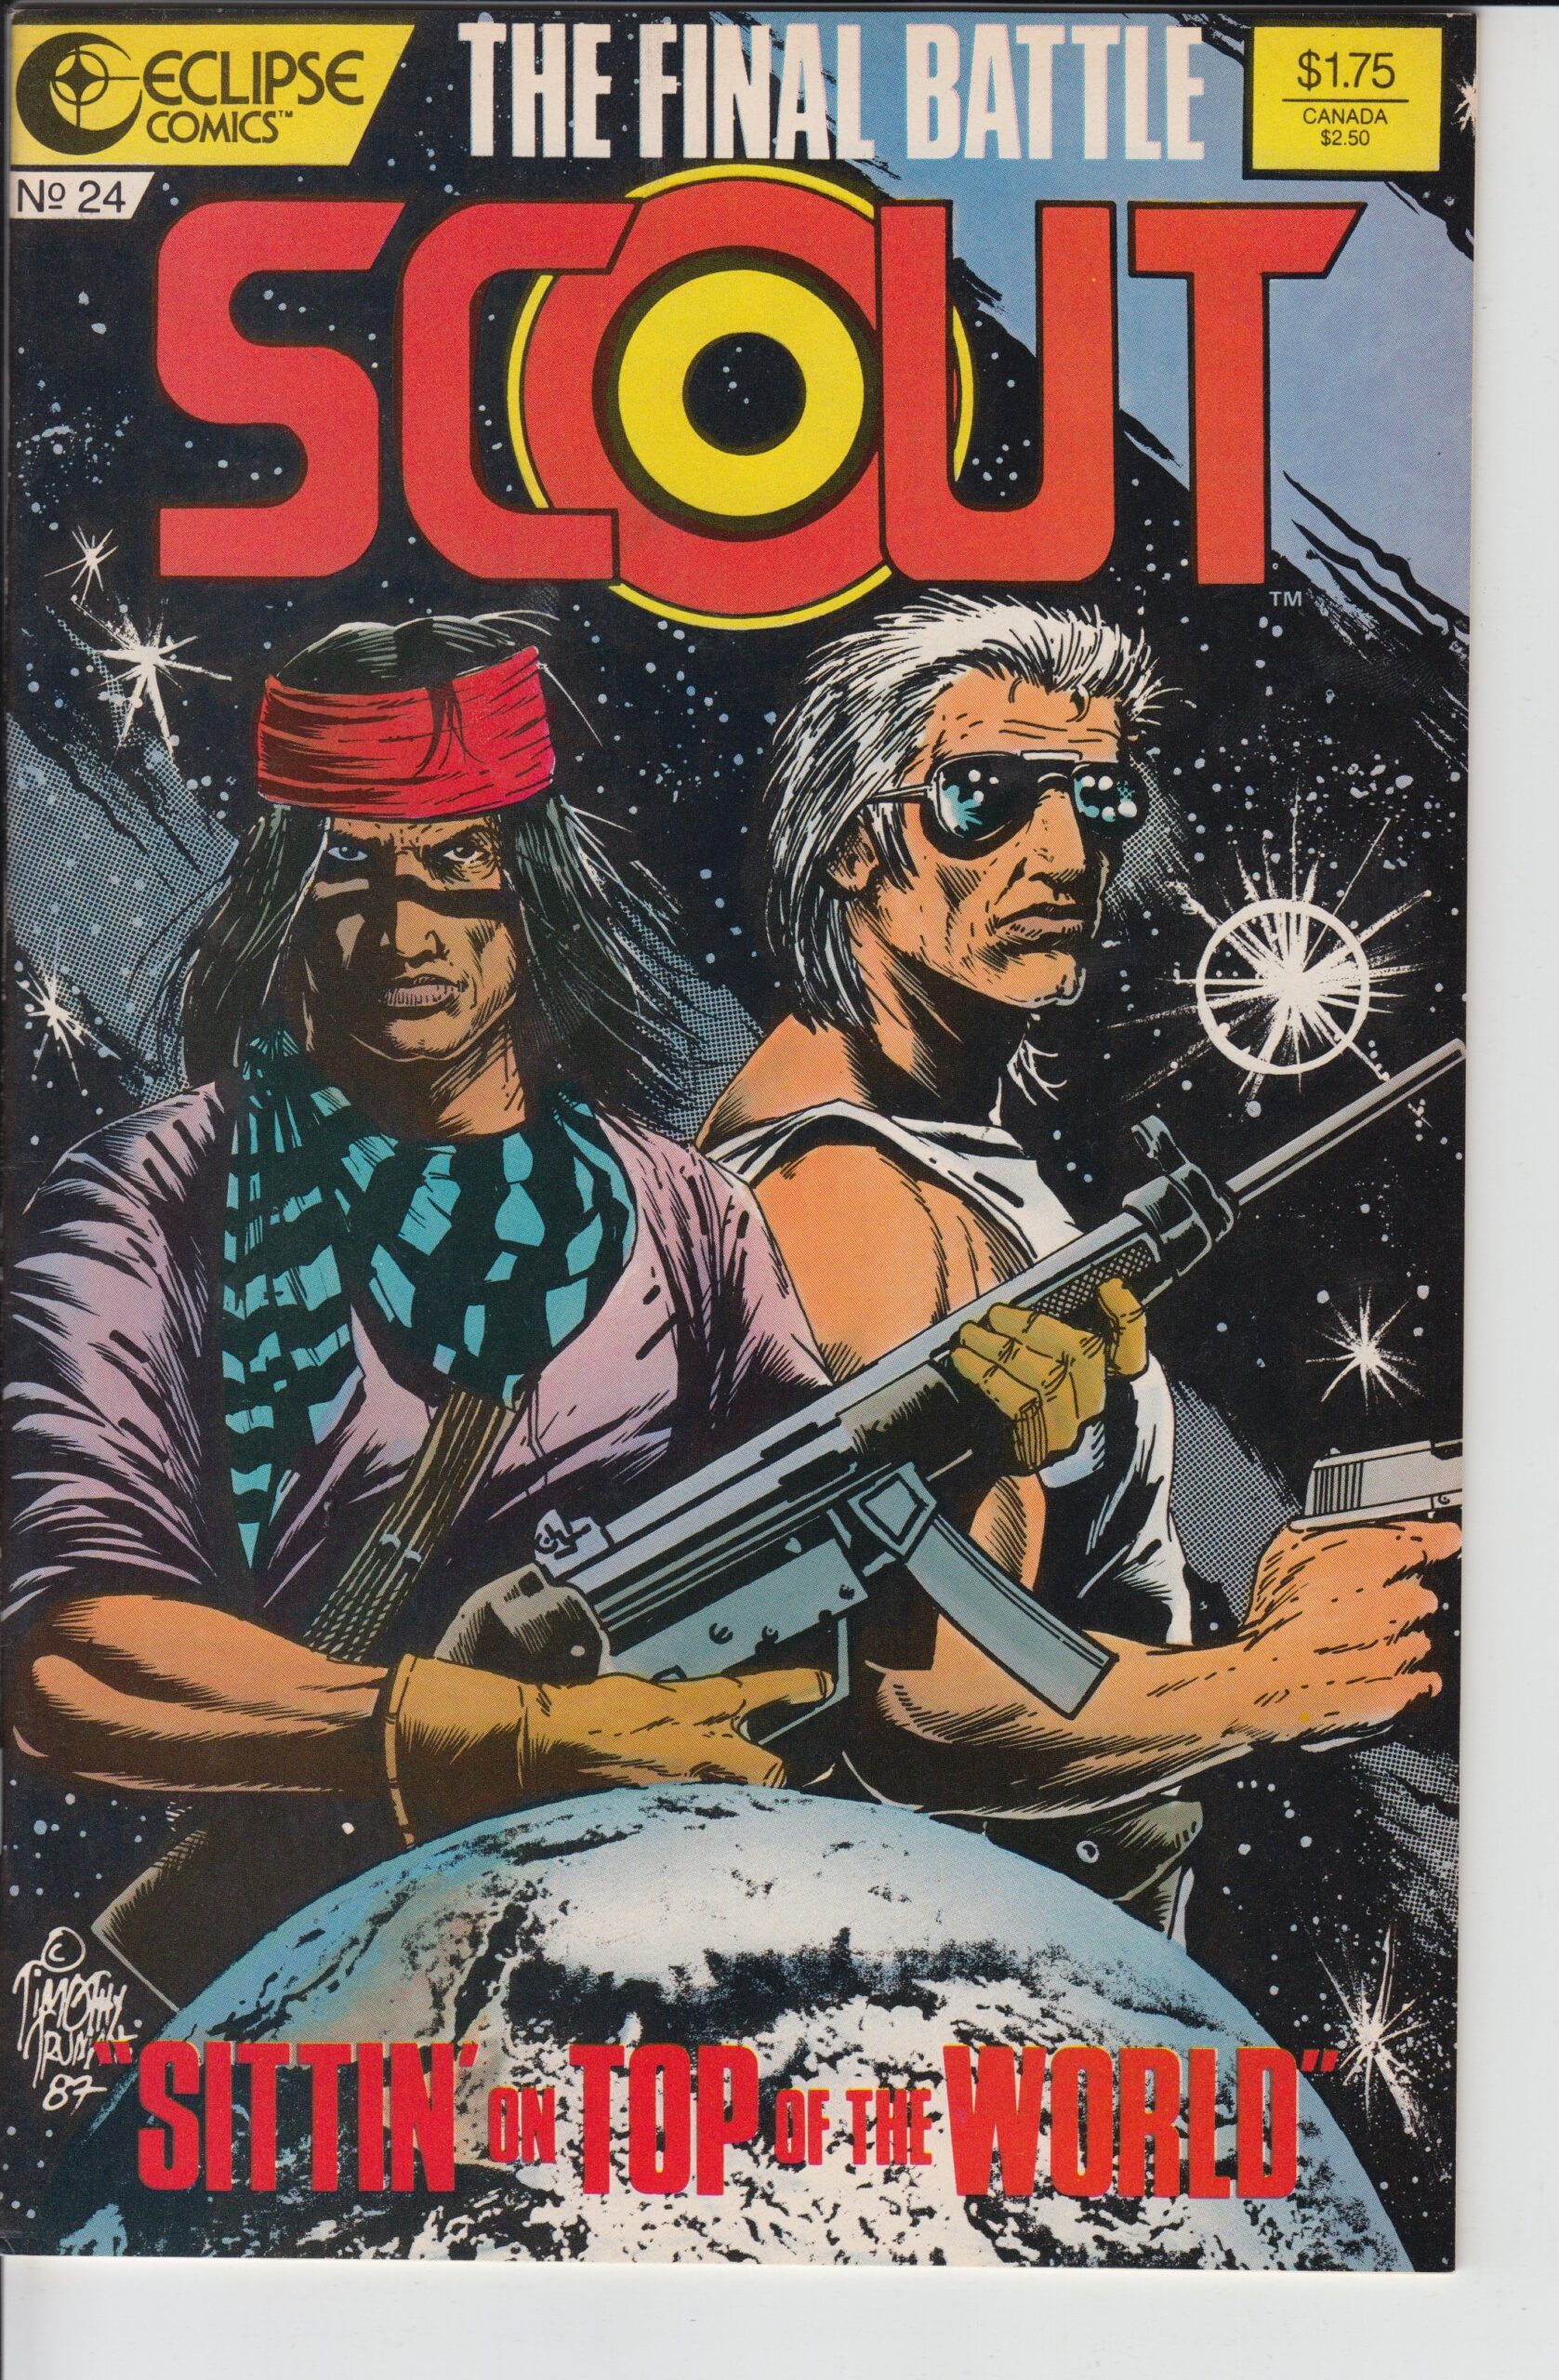 SCOUT #24 (1987) Tim Truman, a classic series!